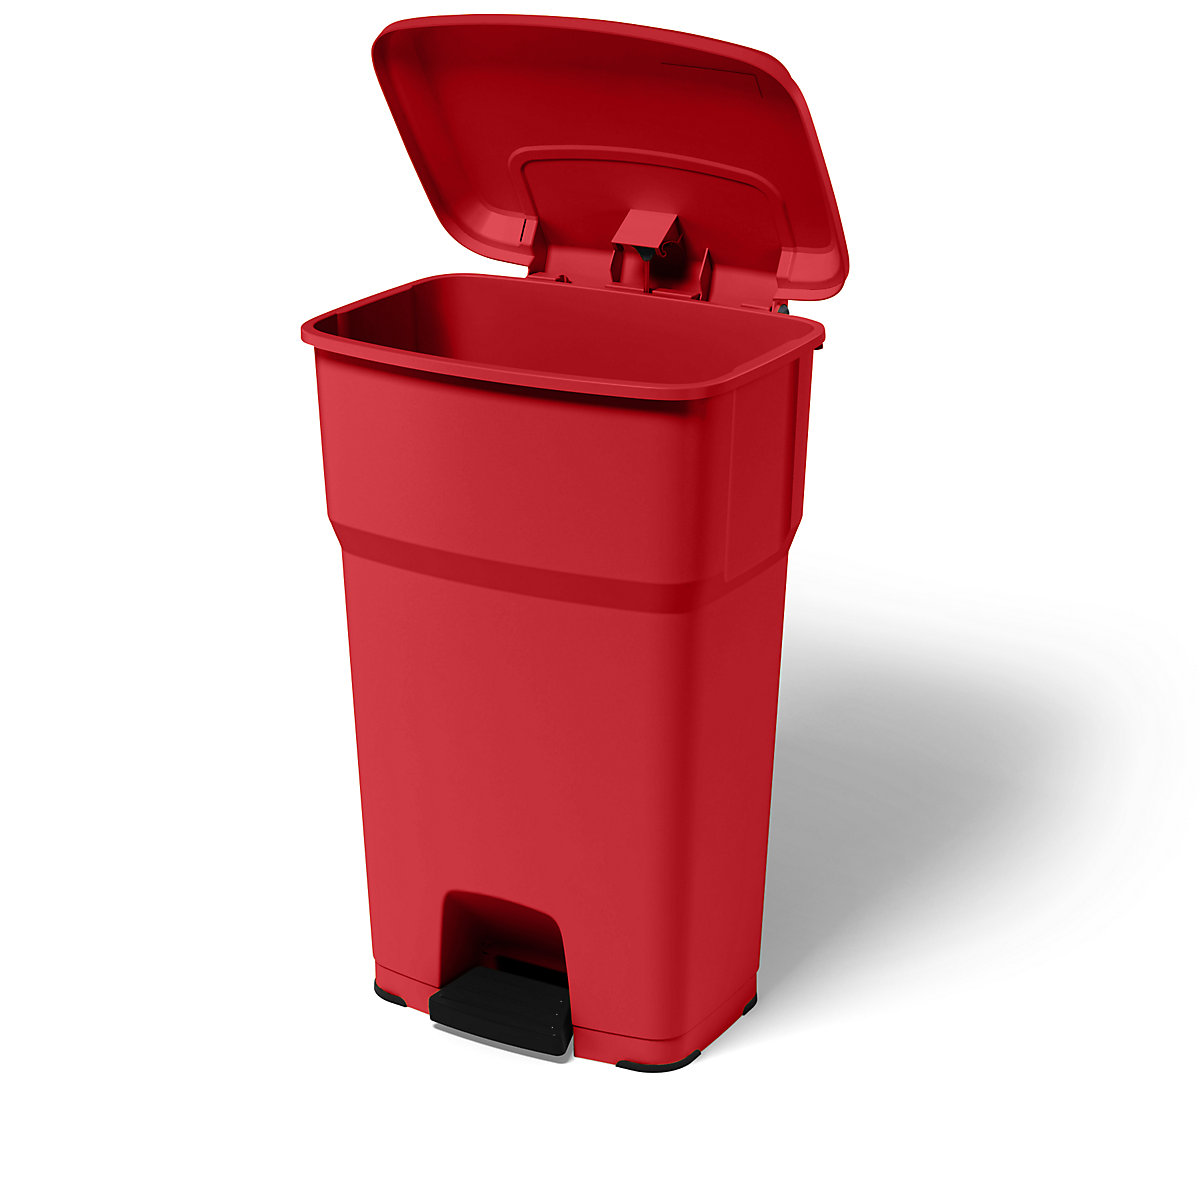 rothopro – Collecteur de déchets à pédale HERA, capacité 85 l, l x h x p 490 x 790 x 390 mm, rouge